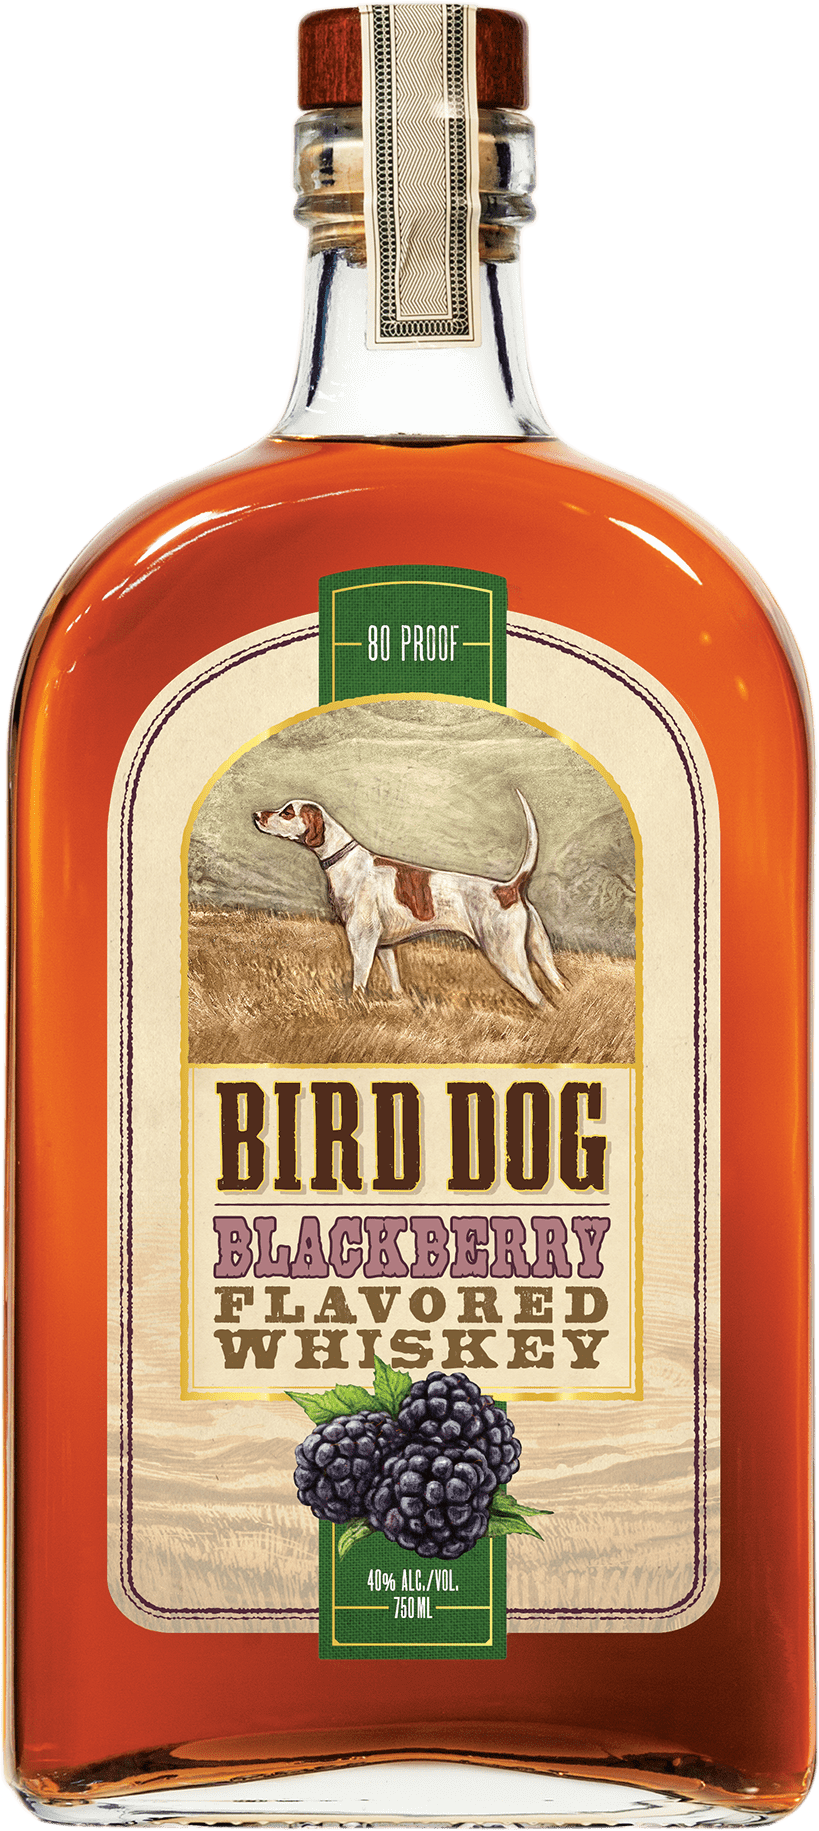 Bottle of Bird Dog Blackberry Whiskey